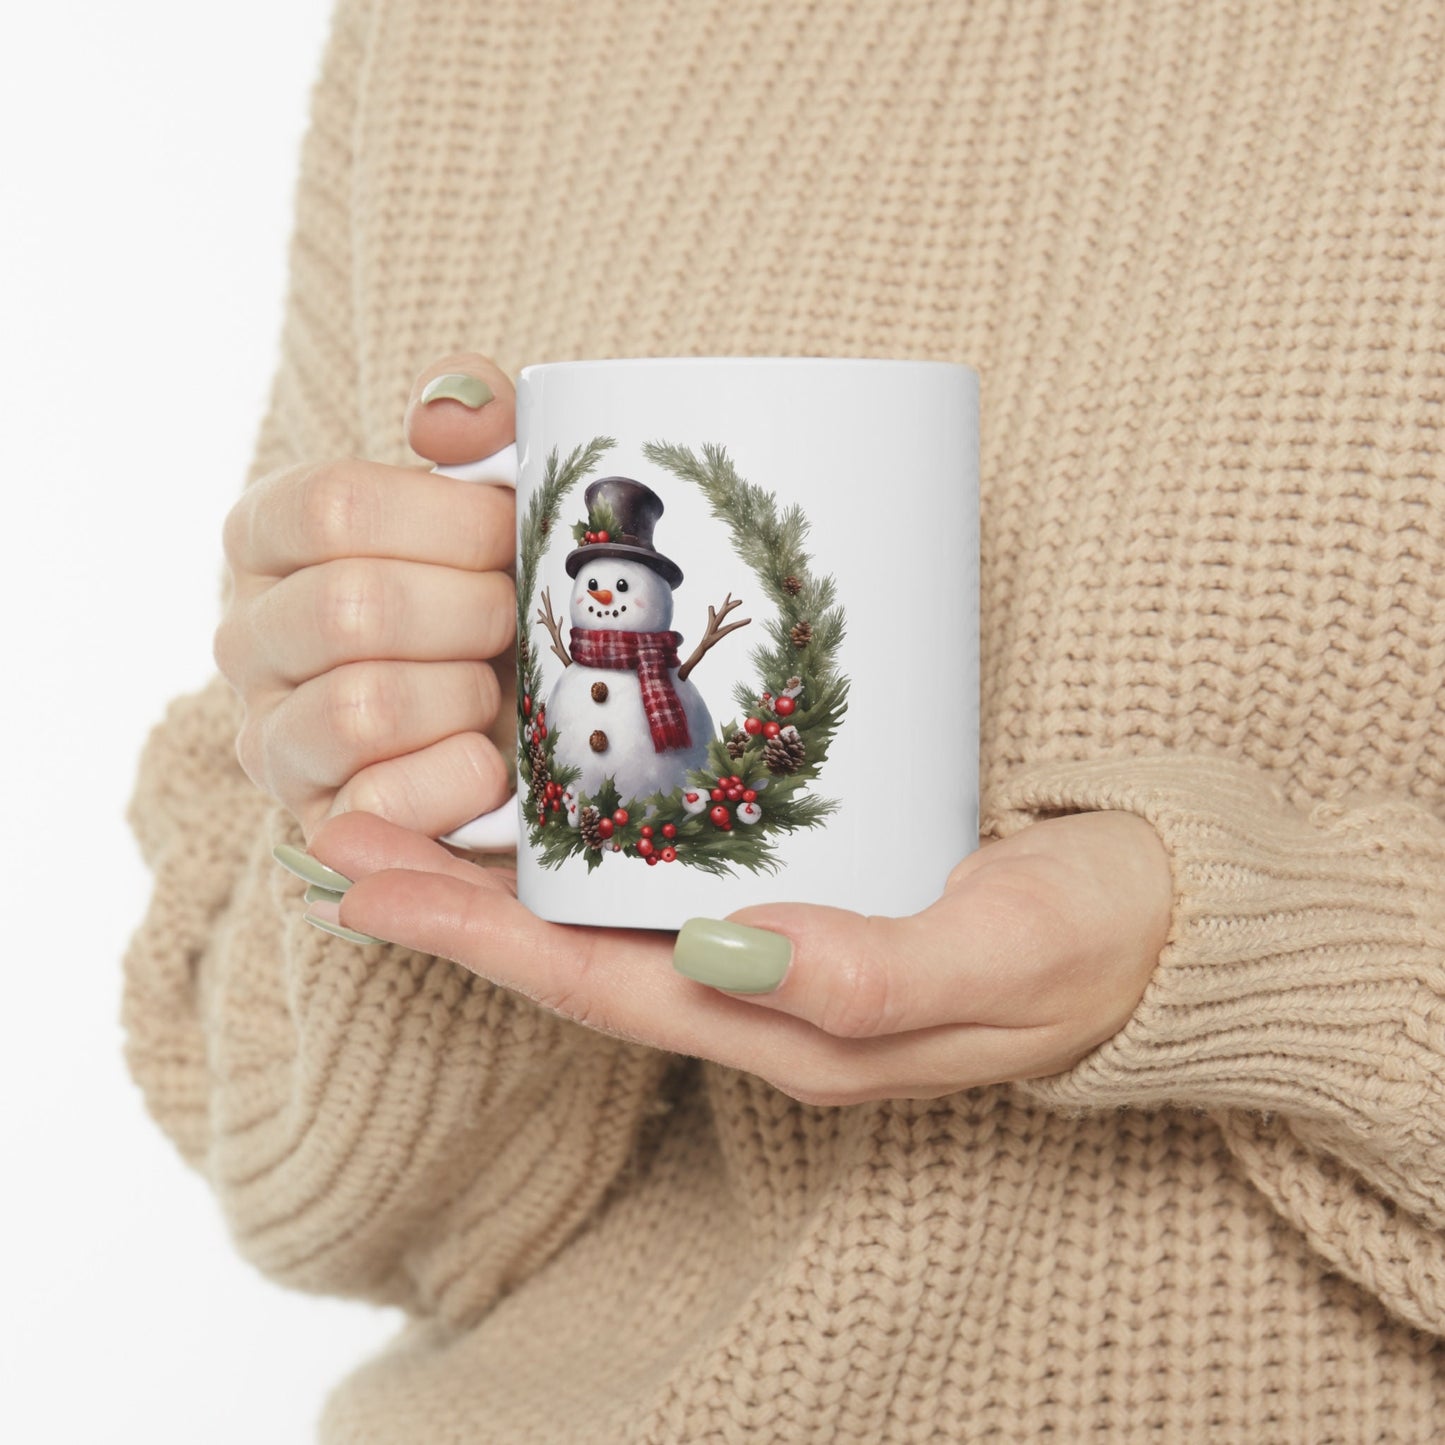 Snowman Reef Christmas Mug, Perfect Holiday Cheer Coffee Mug, Gift Mug for Christmas Spirit, Cute X-Mas mug for Family and friends